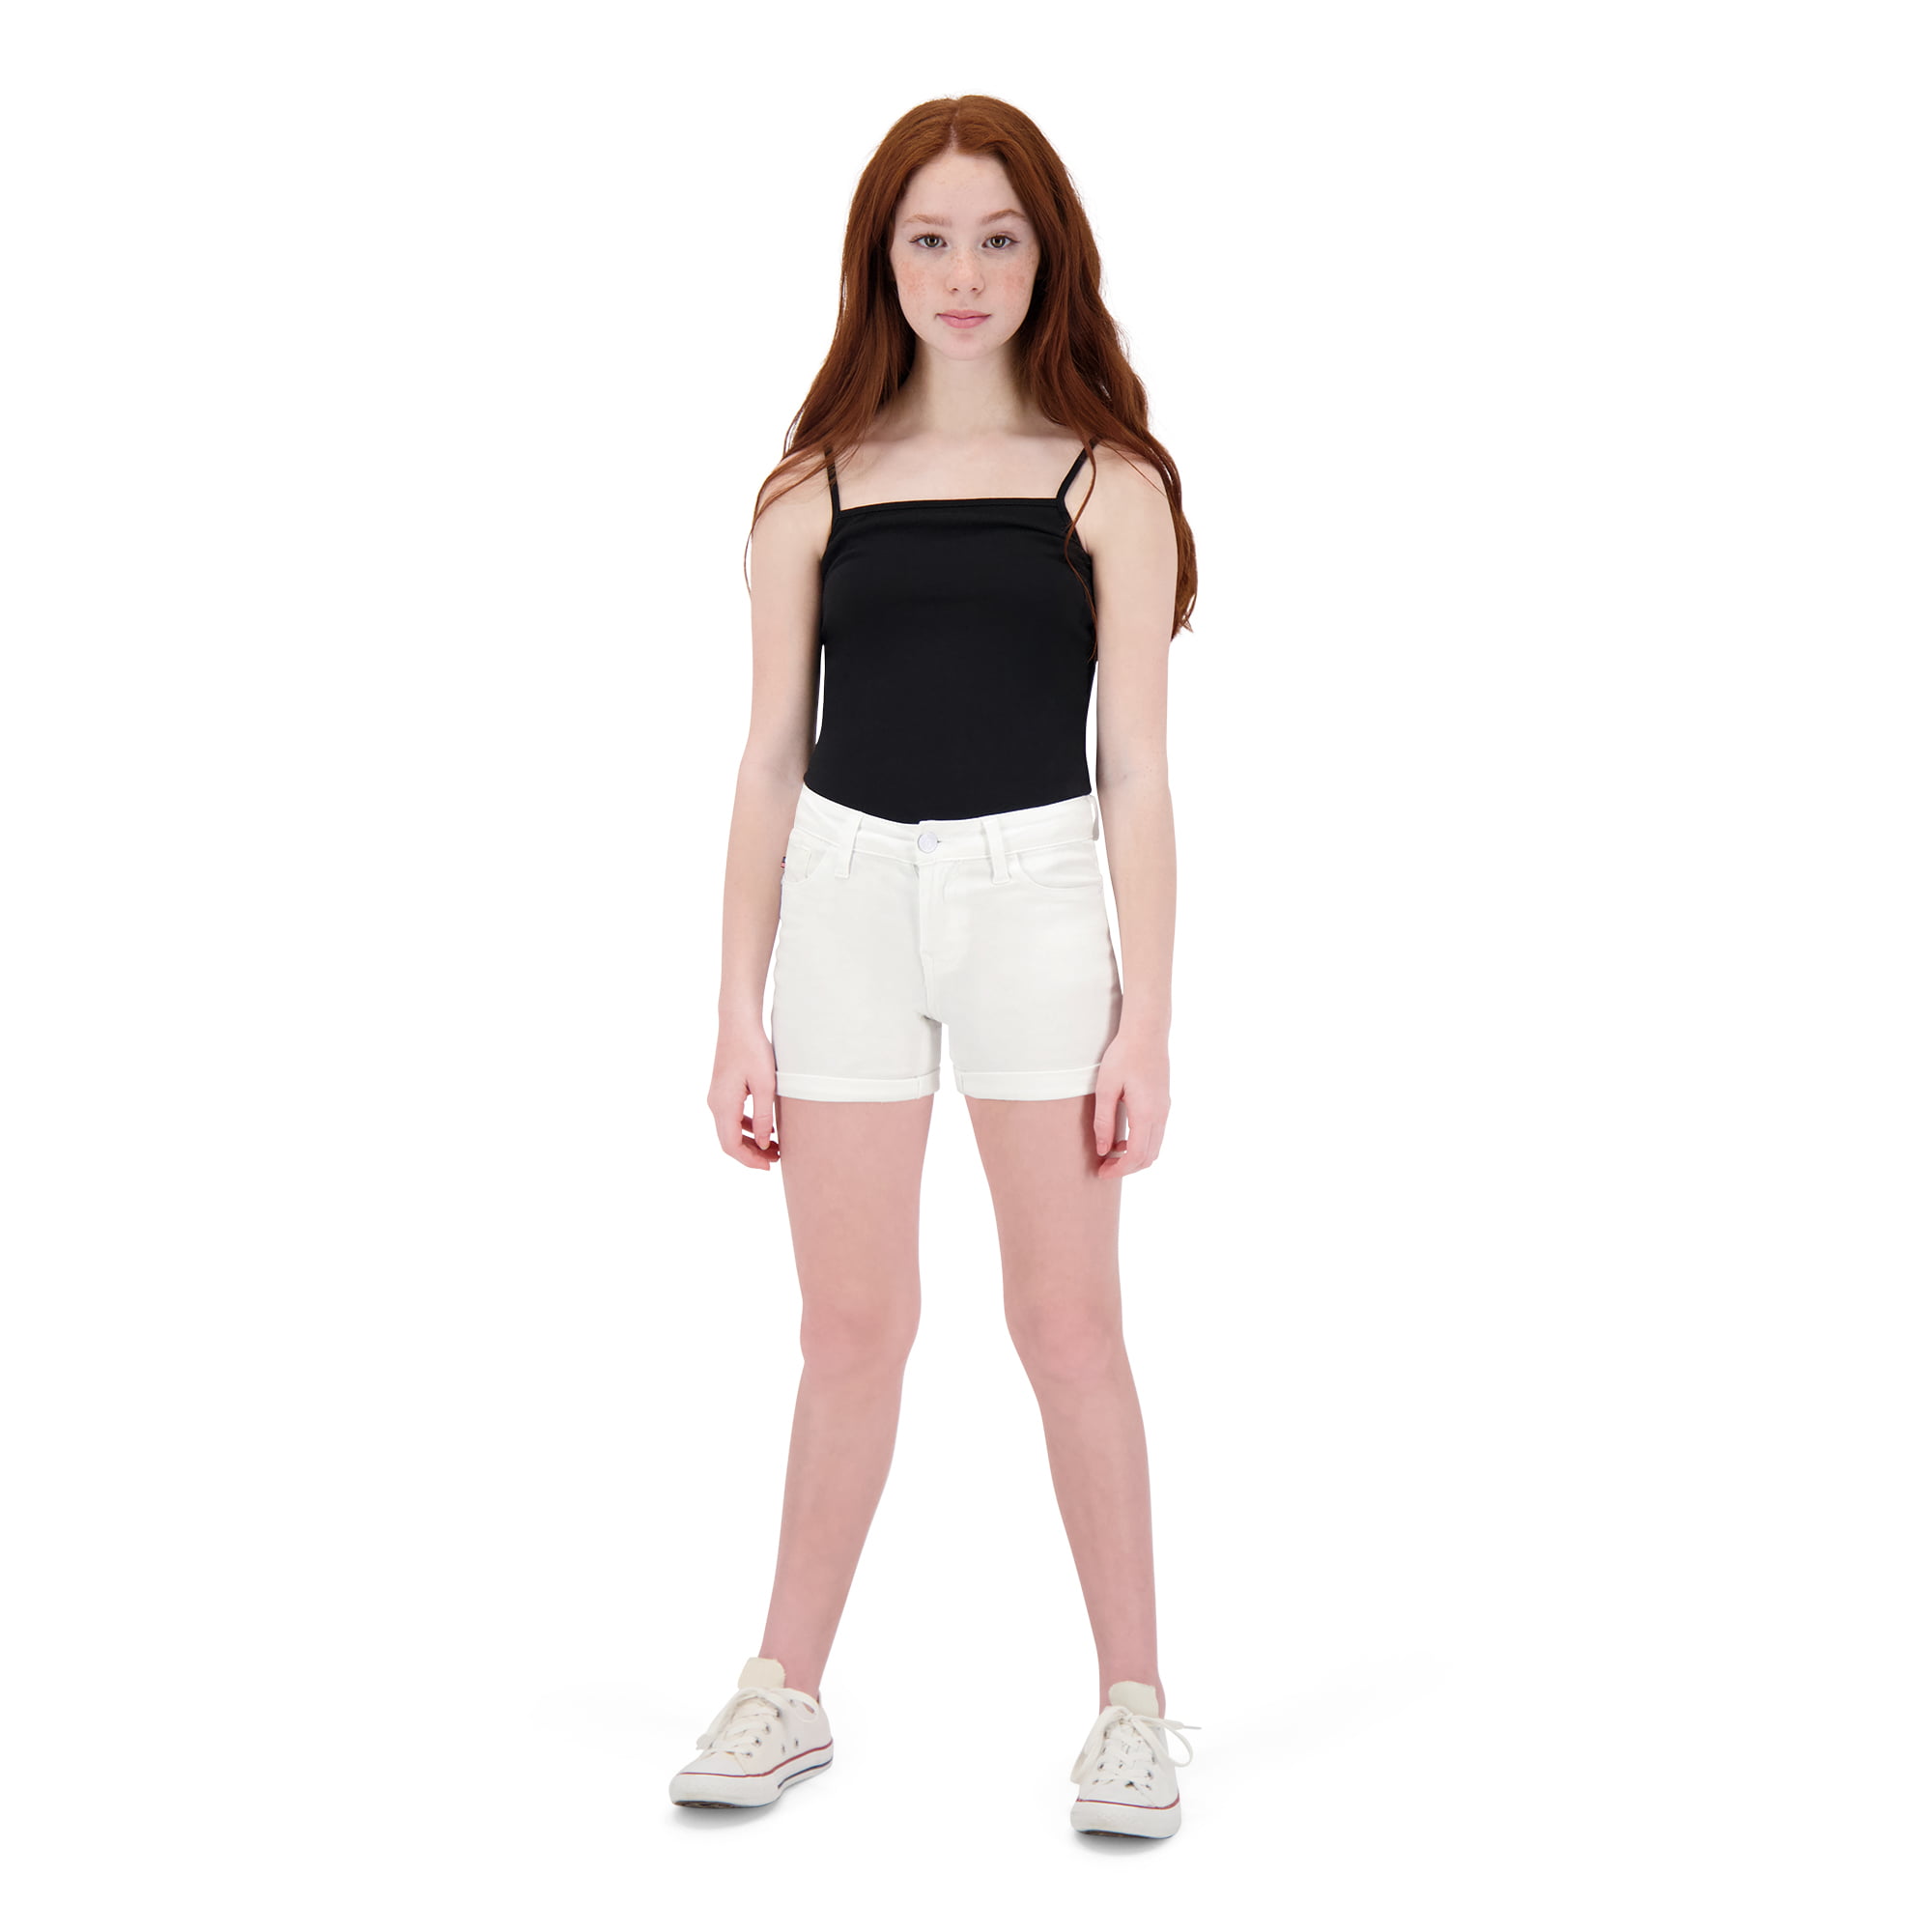 Girl Vigoss Summer Short Size 12 Adjustable Waistband Pink Super Stretch New 